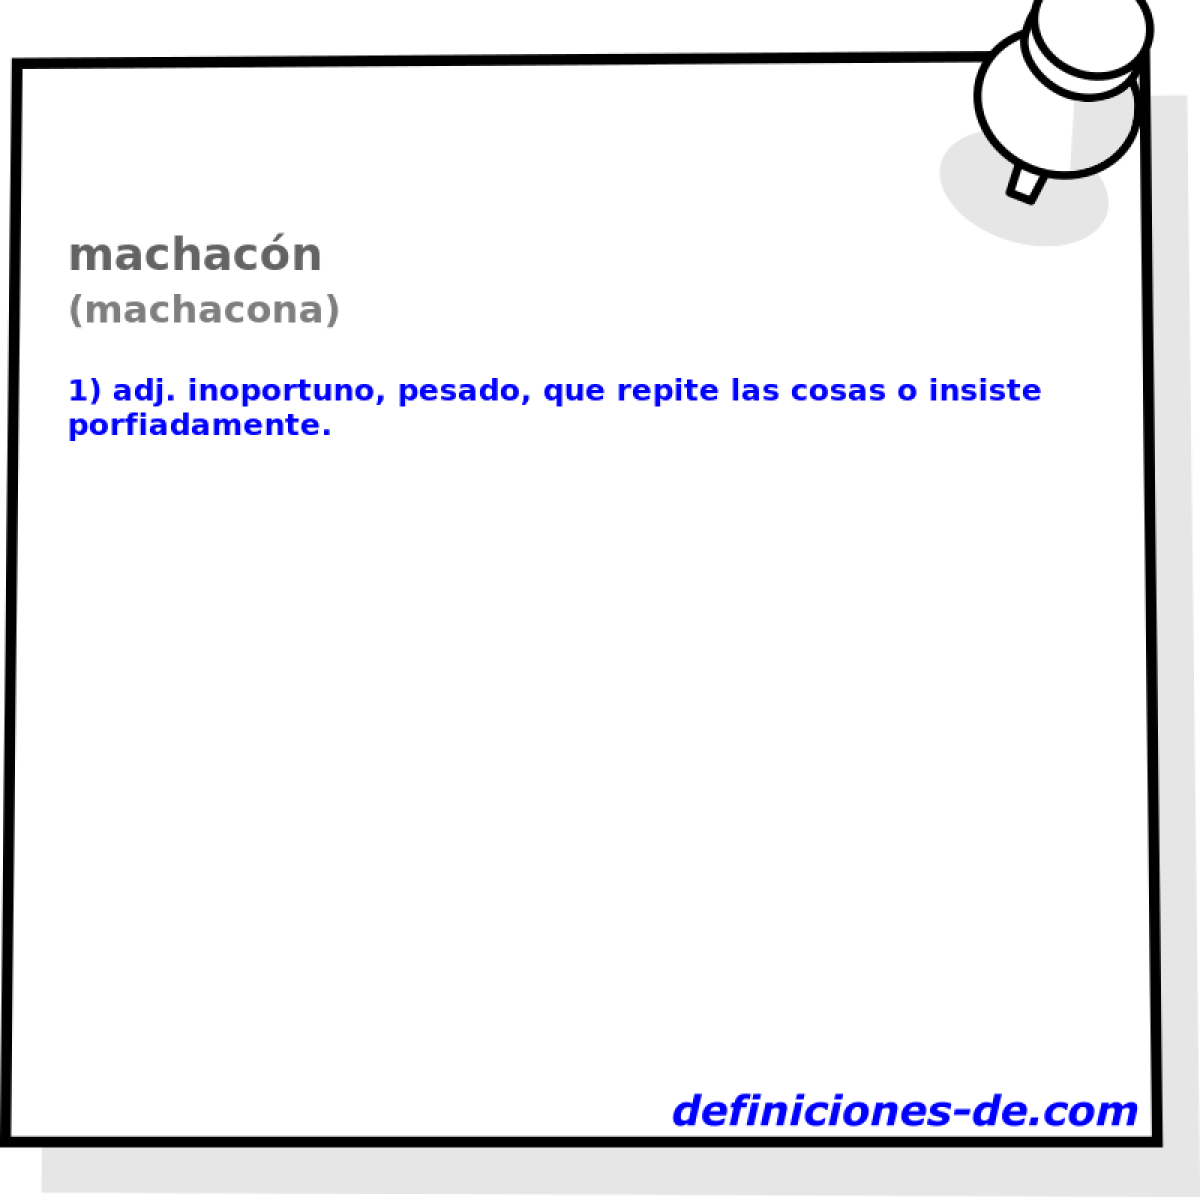 machacn (machacona)